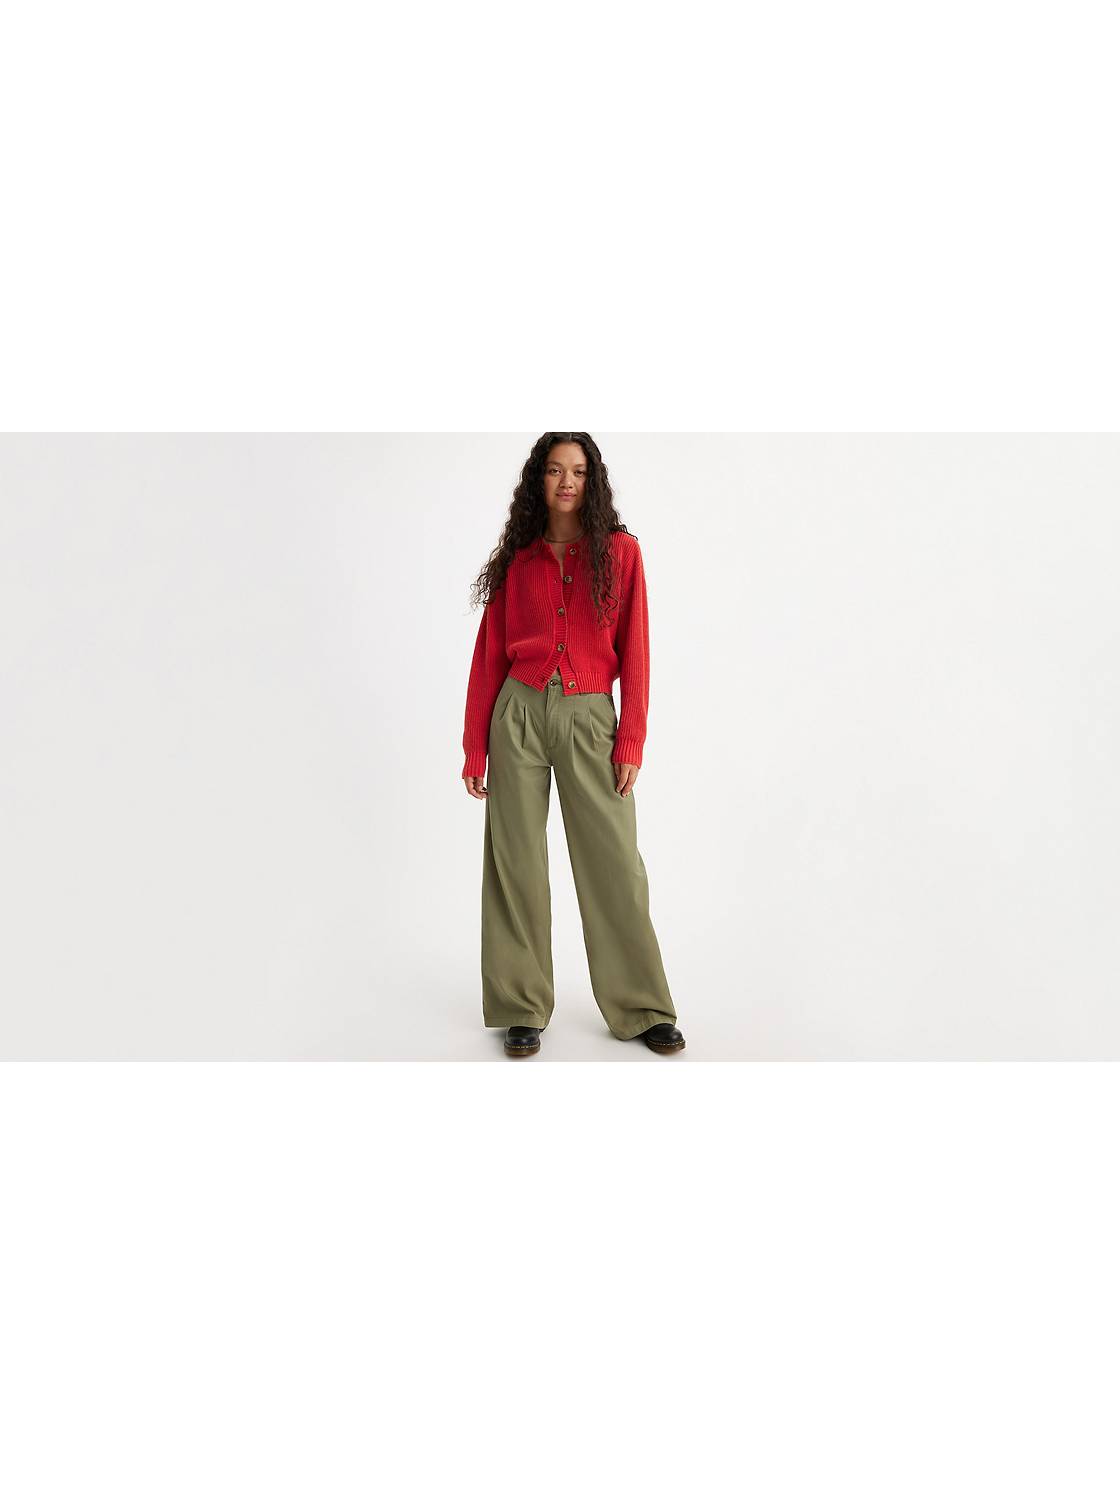 Women's Pants - Shop Trousers & Pants Online